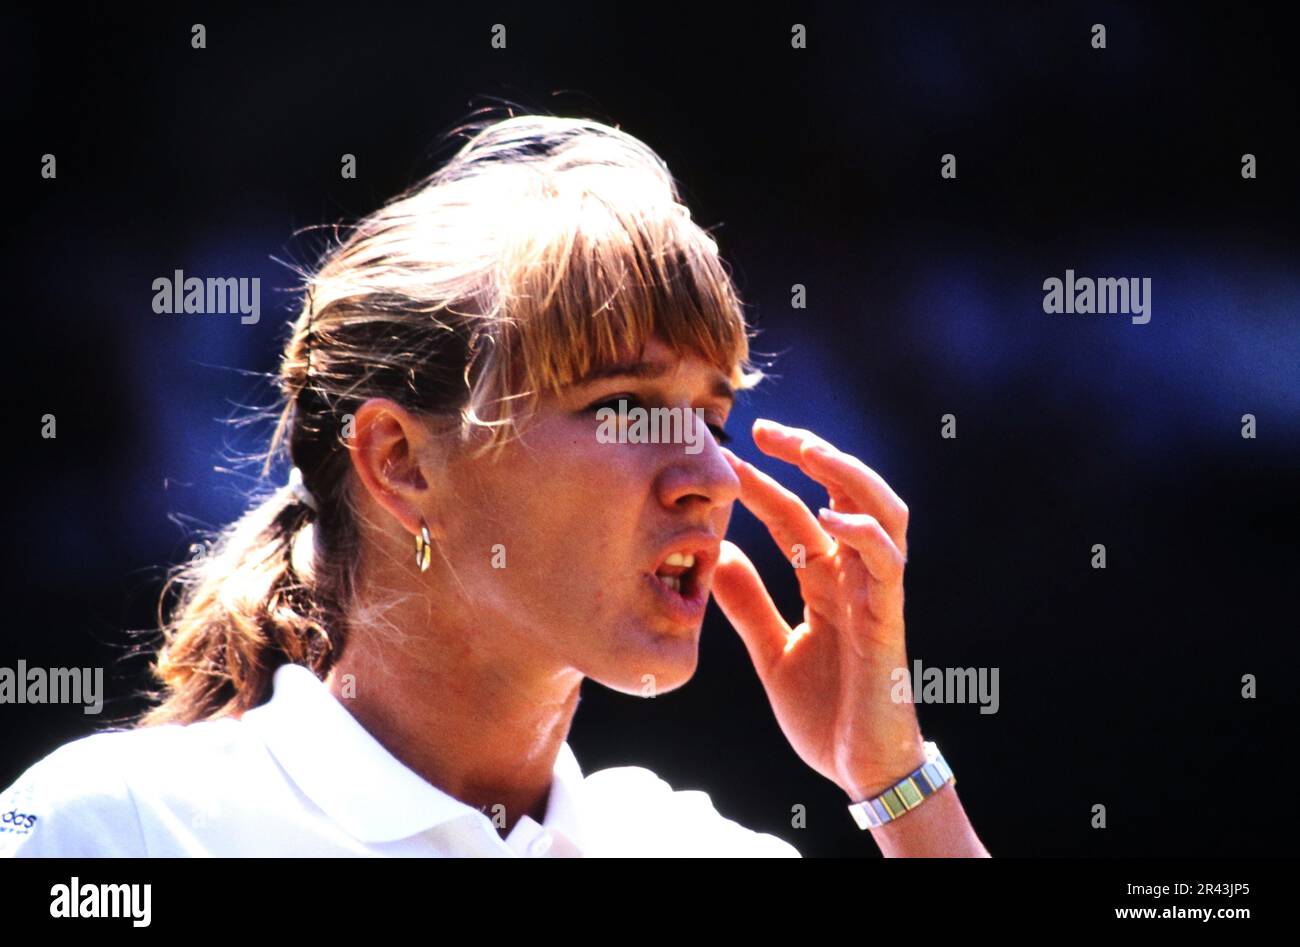 Stefanie Steffi Graf, deutsche Tennisspielerin, auf dem Tennisplatz. Stockfoto